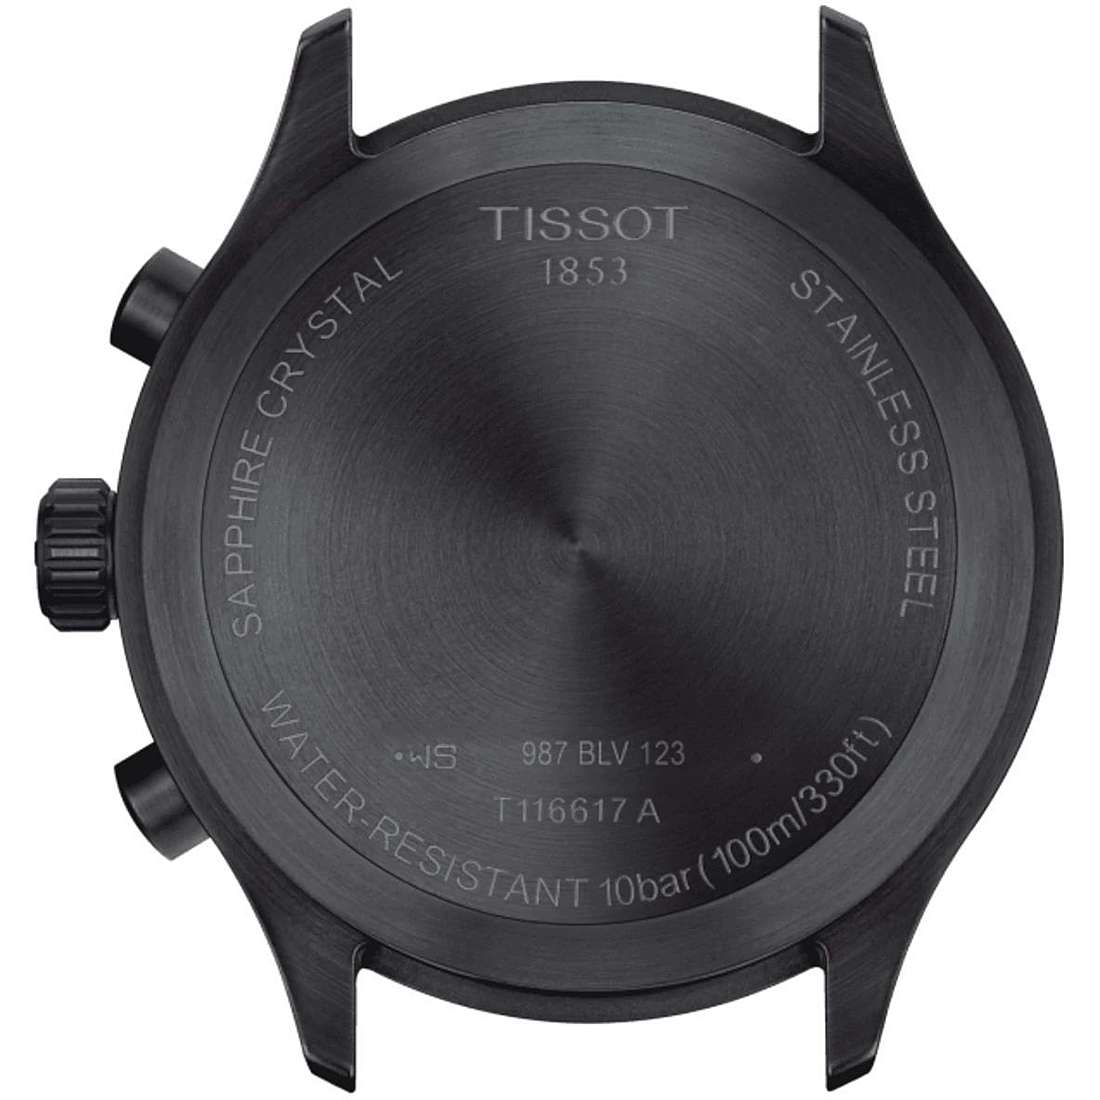 montre chronographe homme Tissot T-Sport Xl T1166173605203